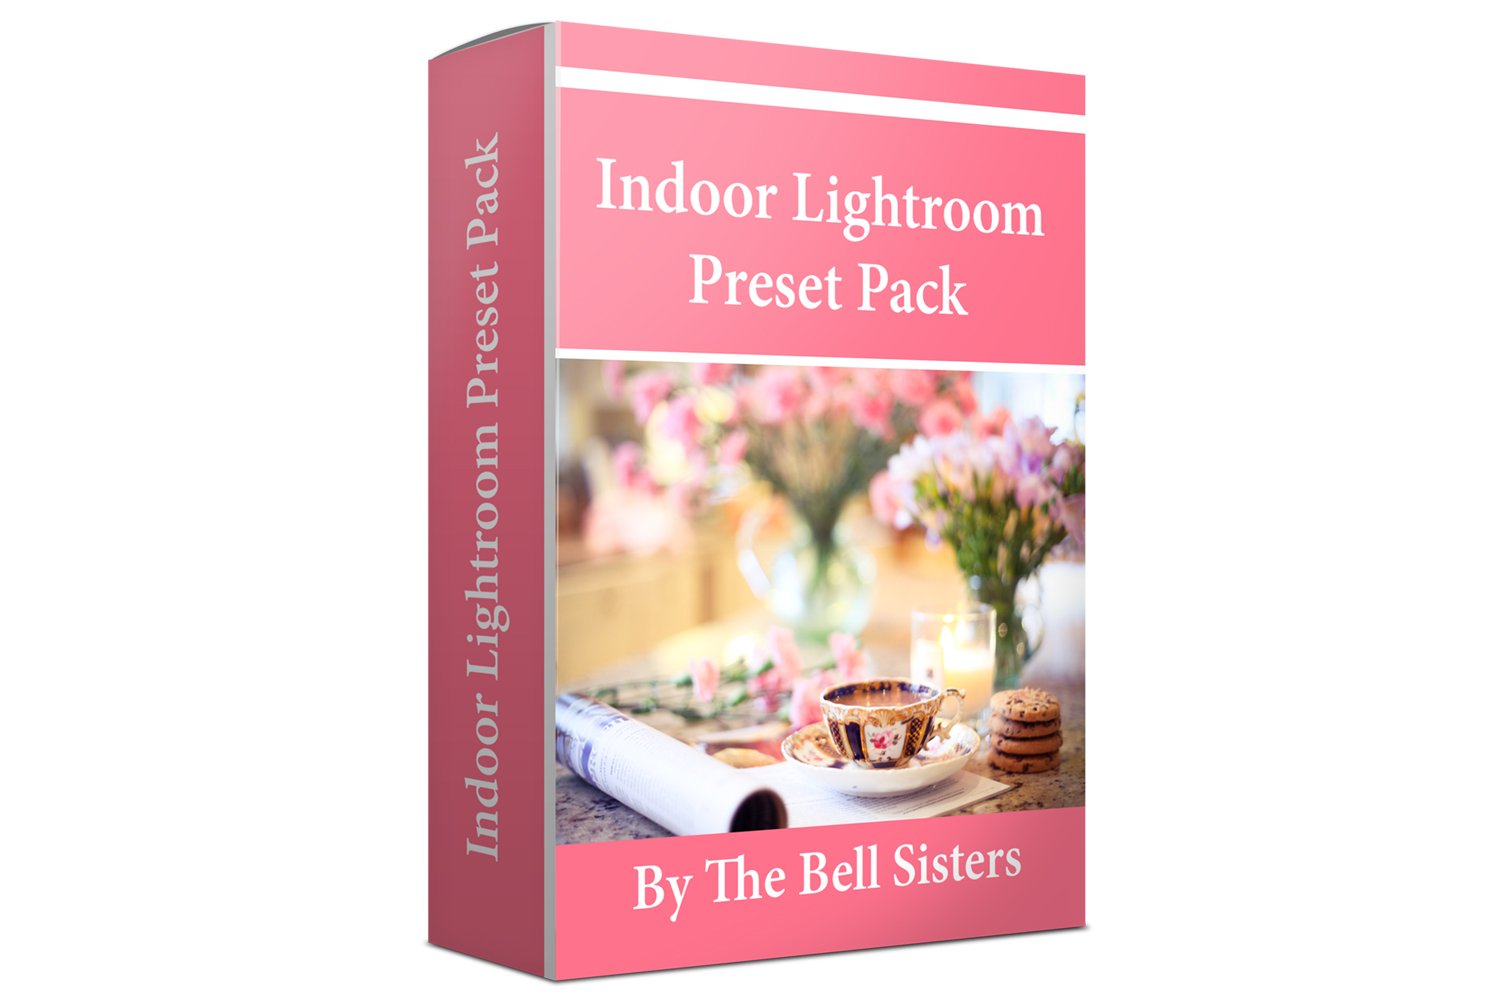 Indoor Lightroom Preset Packcover image.